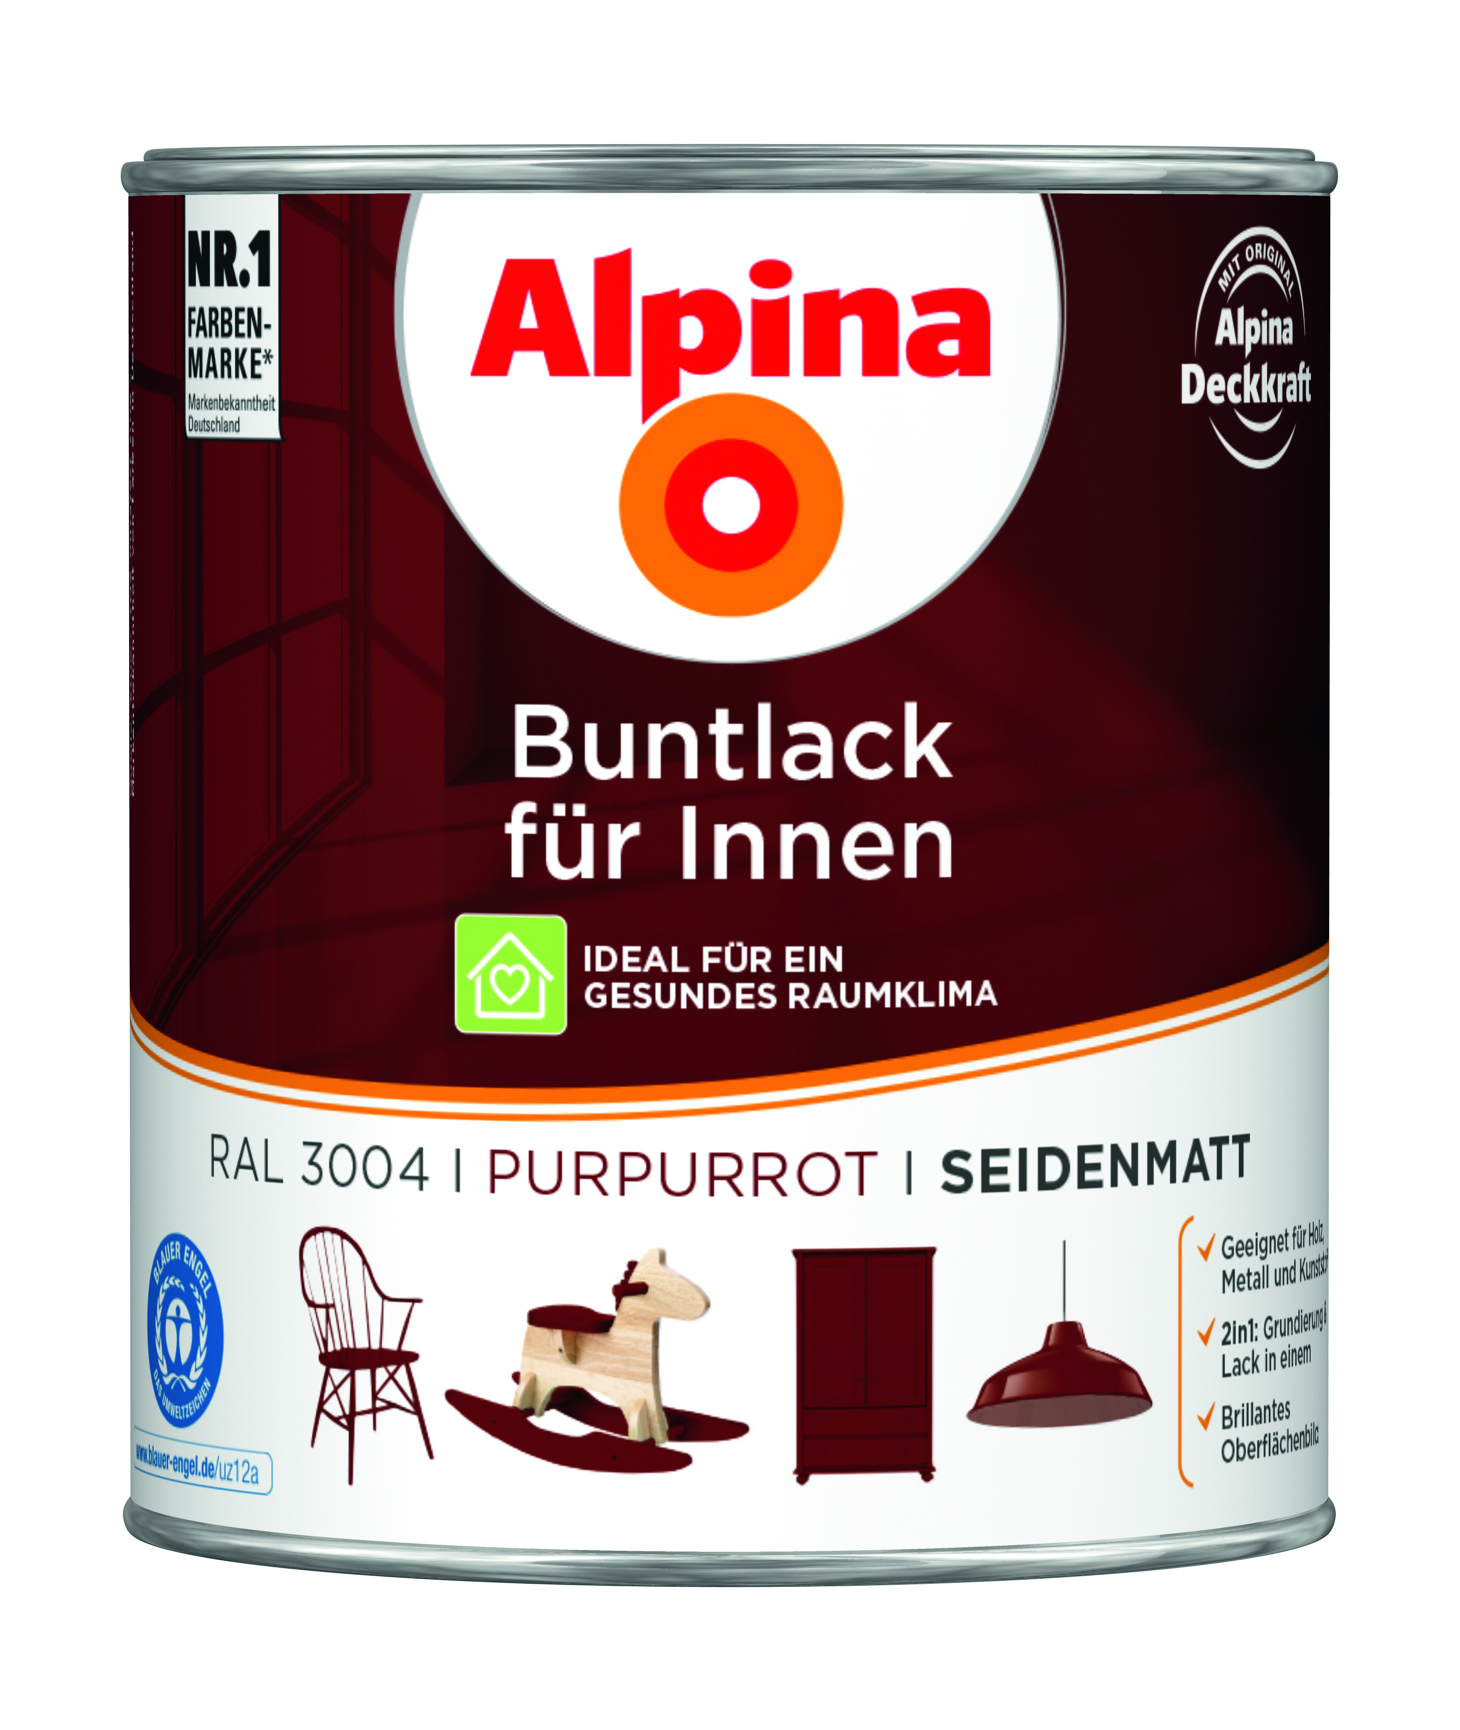 Alpina Buntlack für innen - Nussbraun 750 ml, seidenmatt